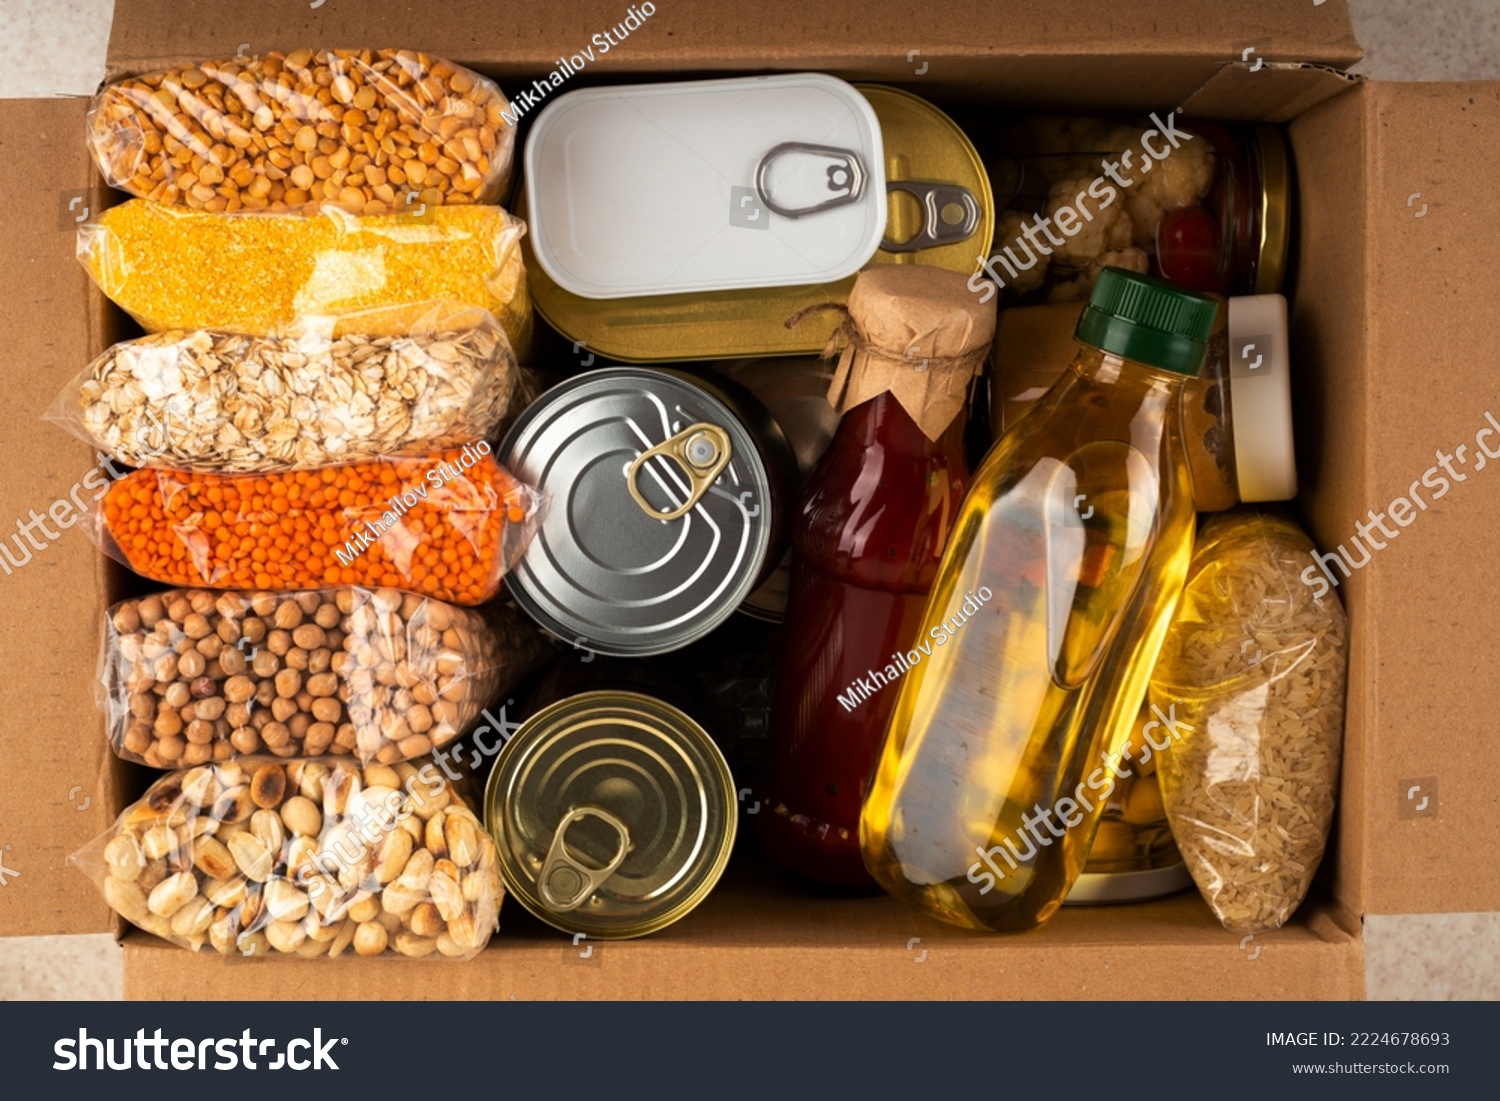 Survival set of nonperishable foods in carton box #2224678693